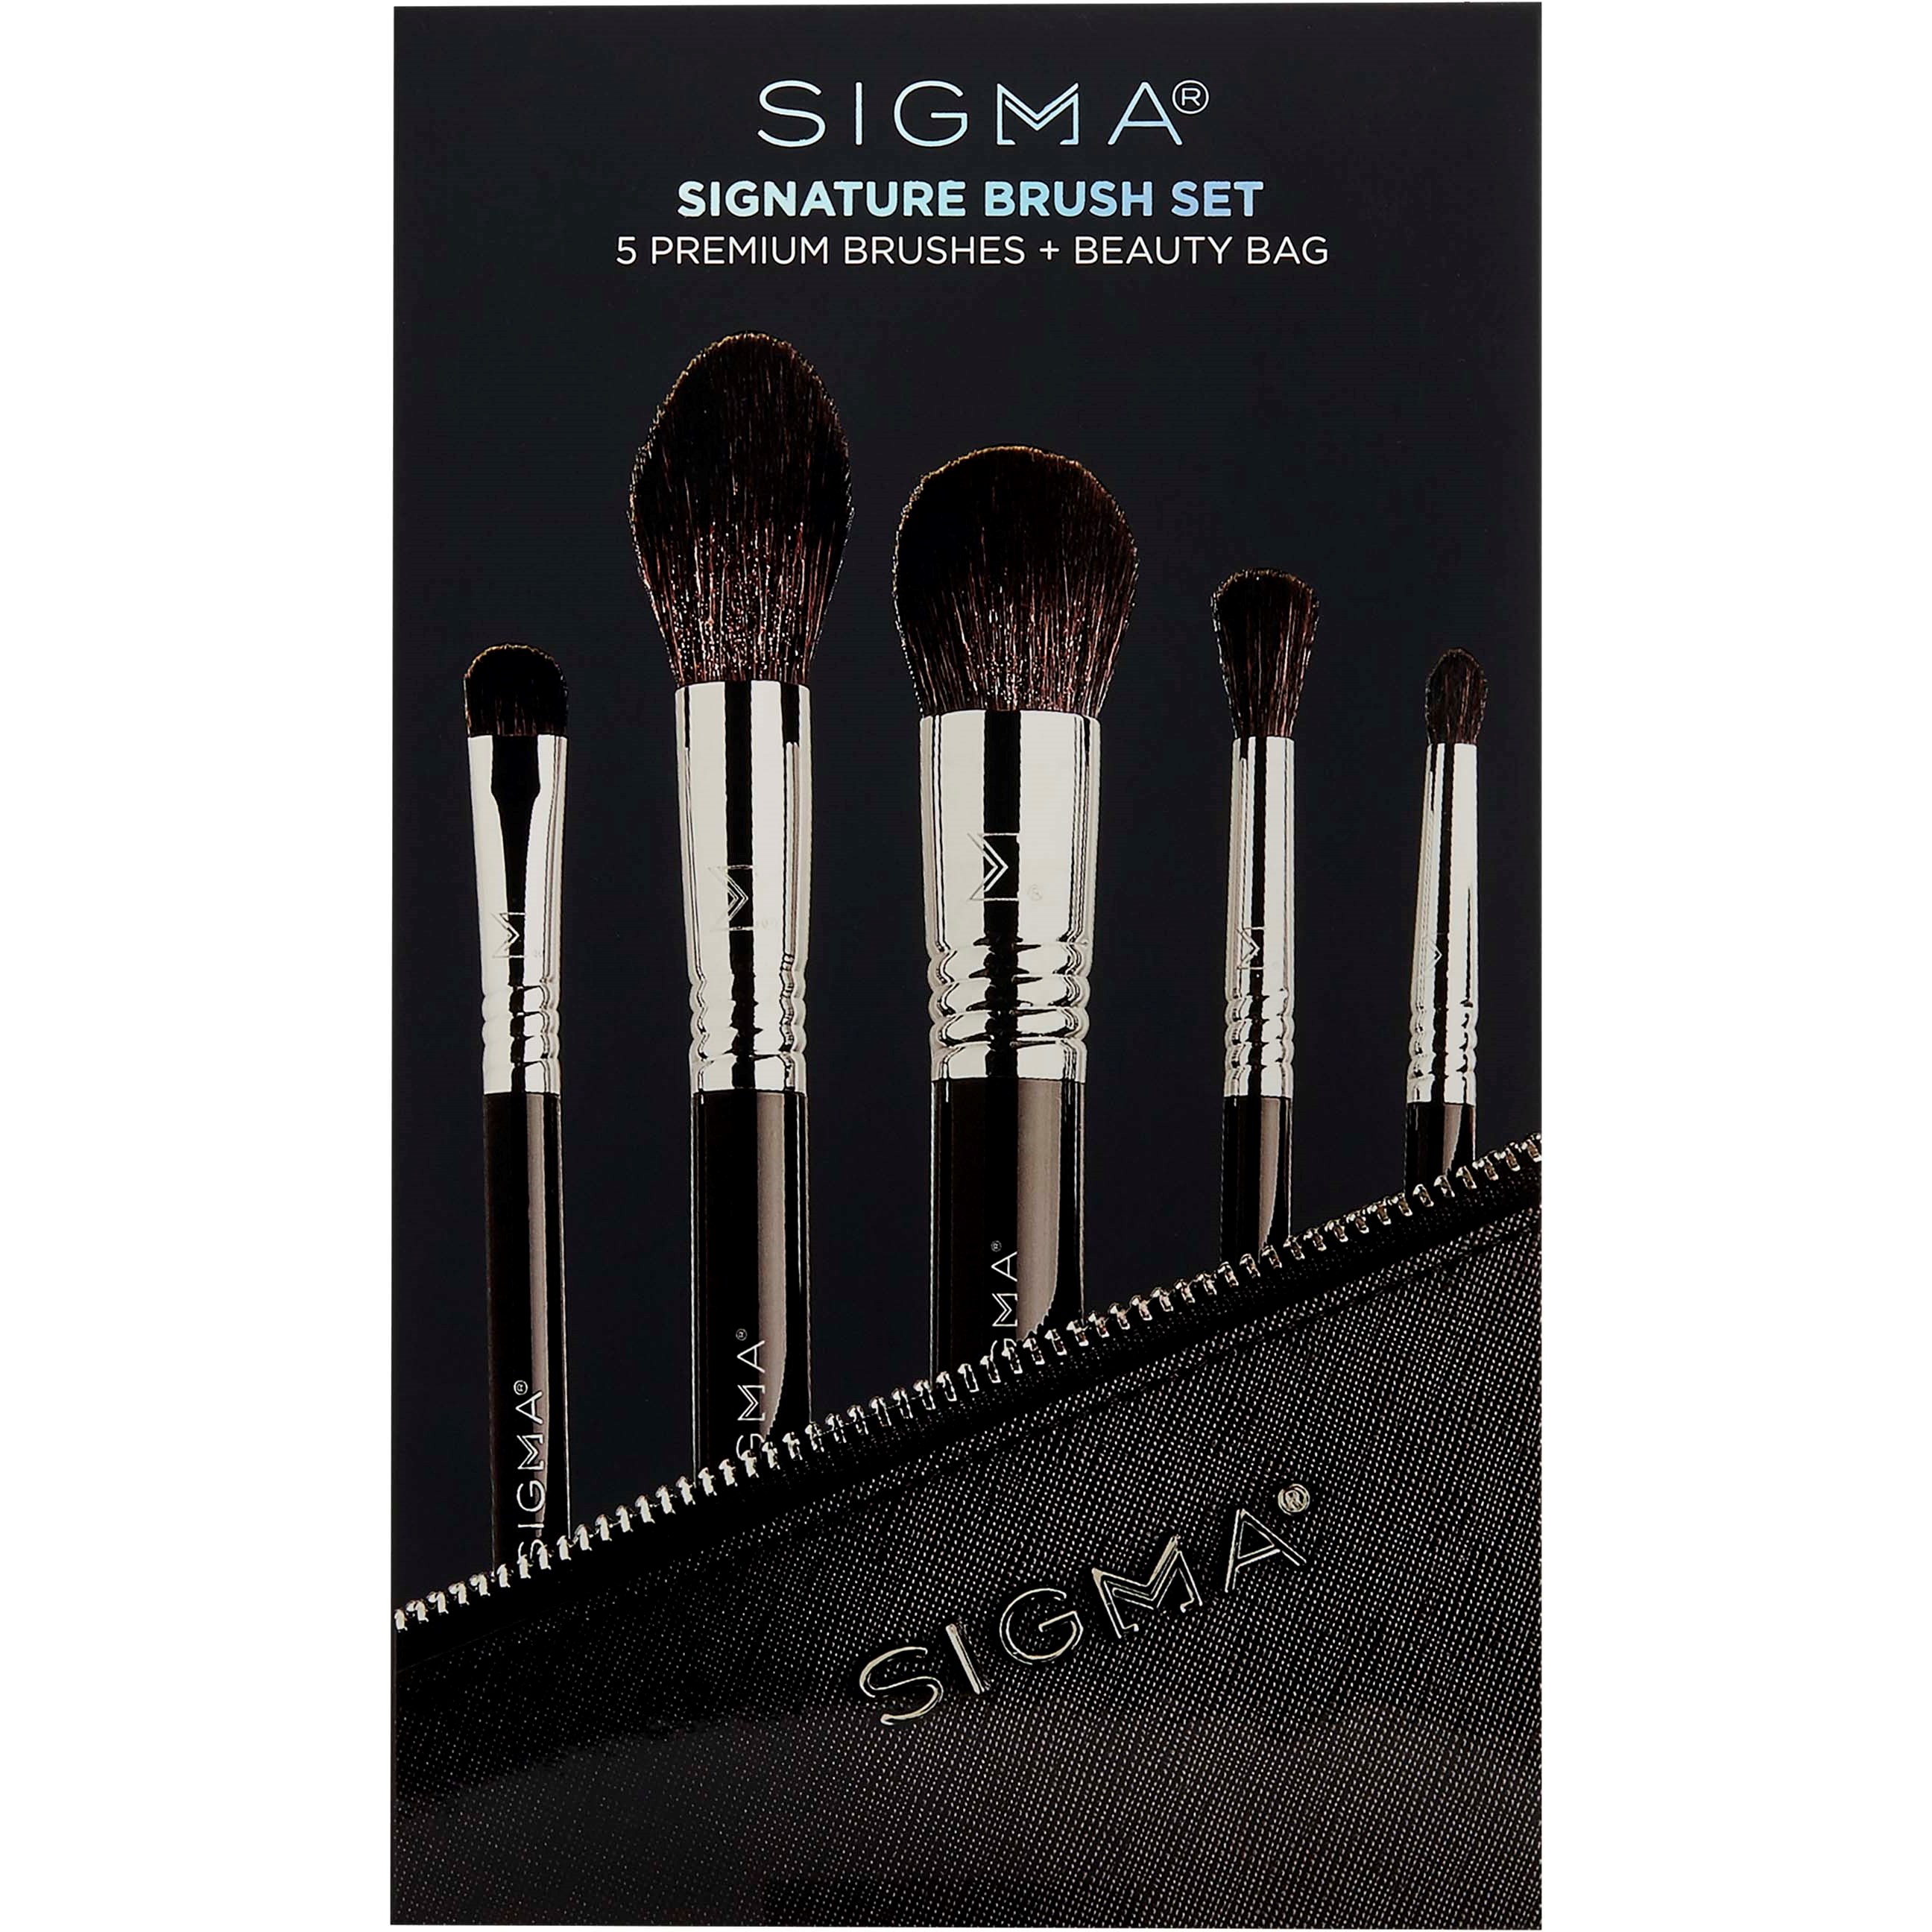 Bilde av Sigma Beauty Signature Brush Set